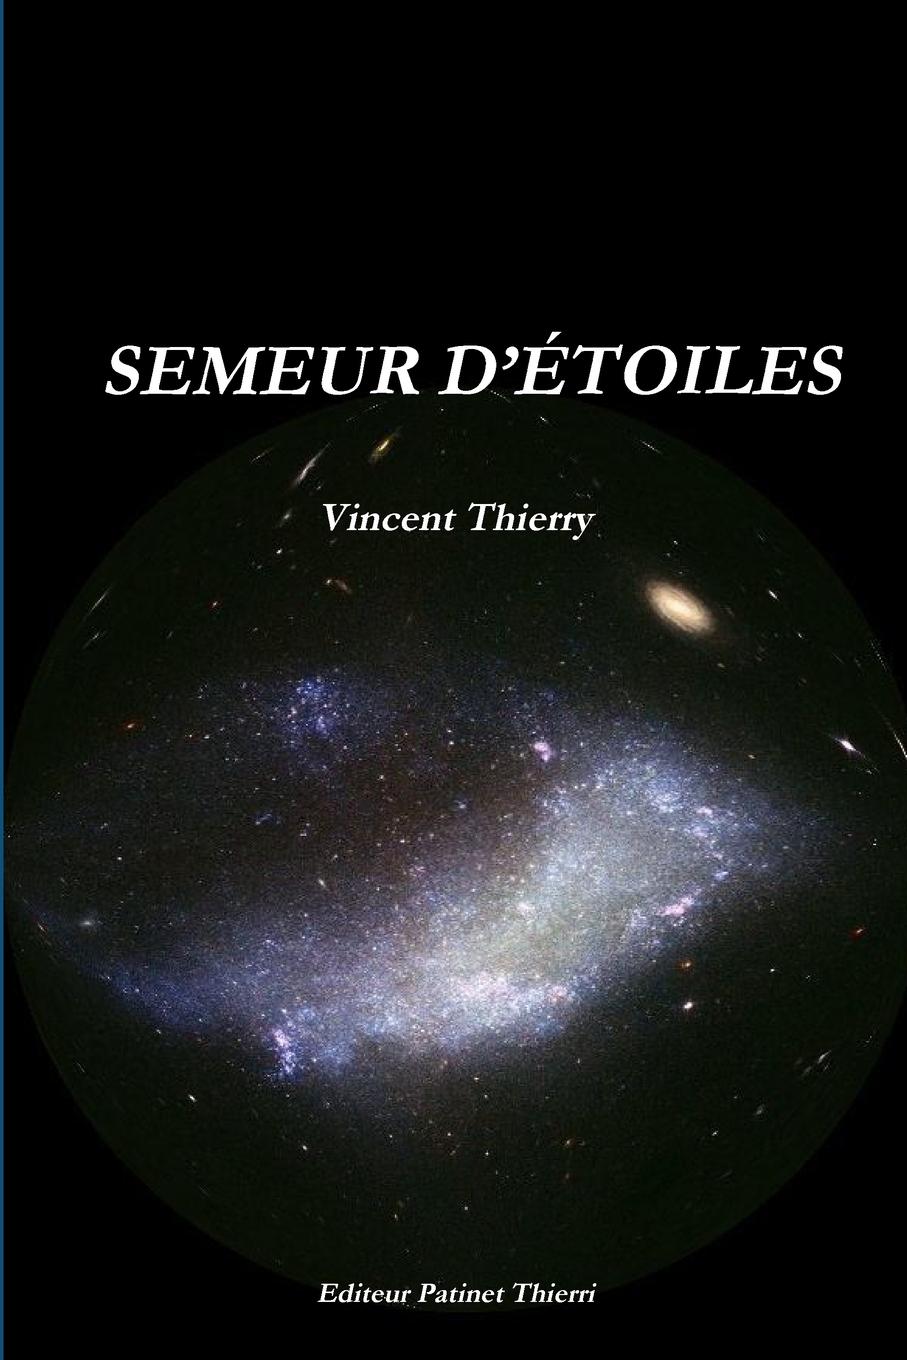 VINCENT THIERRY SEMEUR D.ETOILES